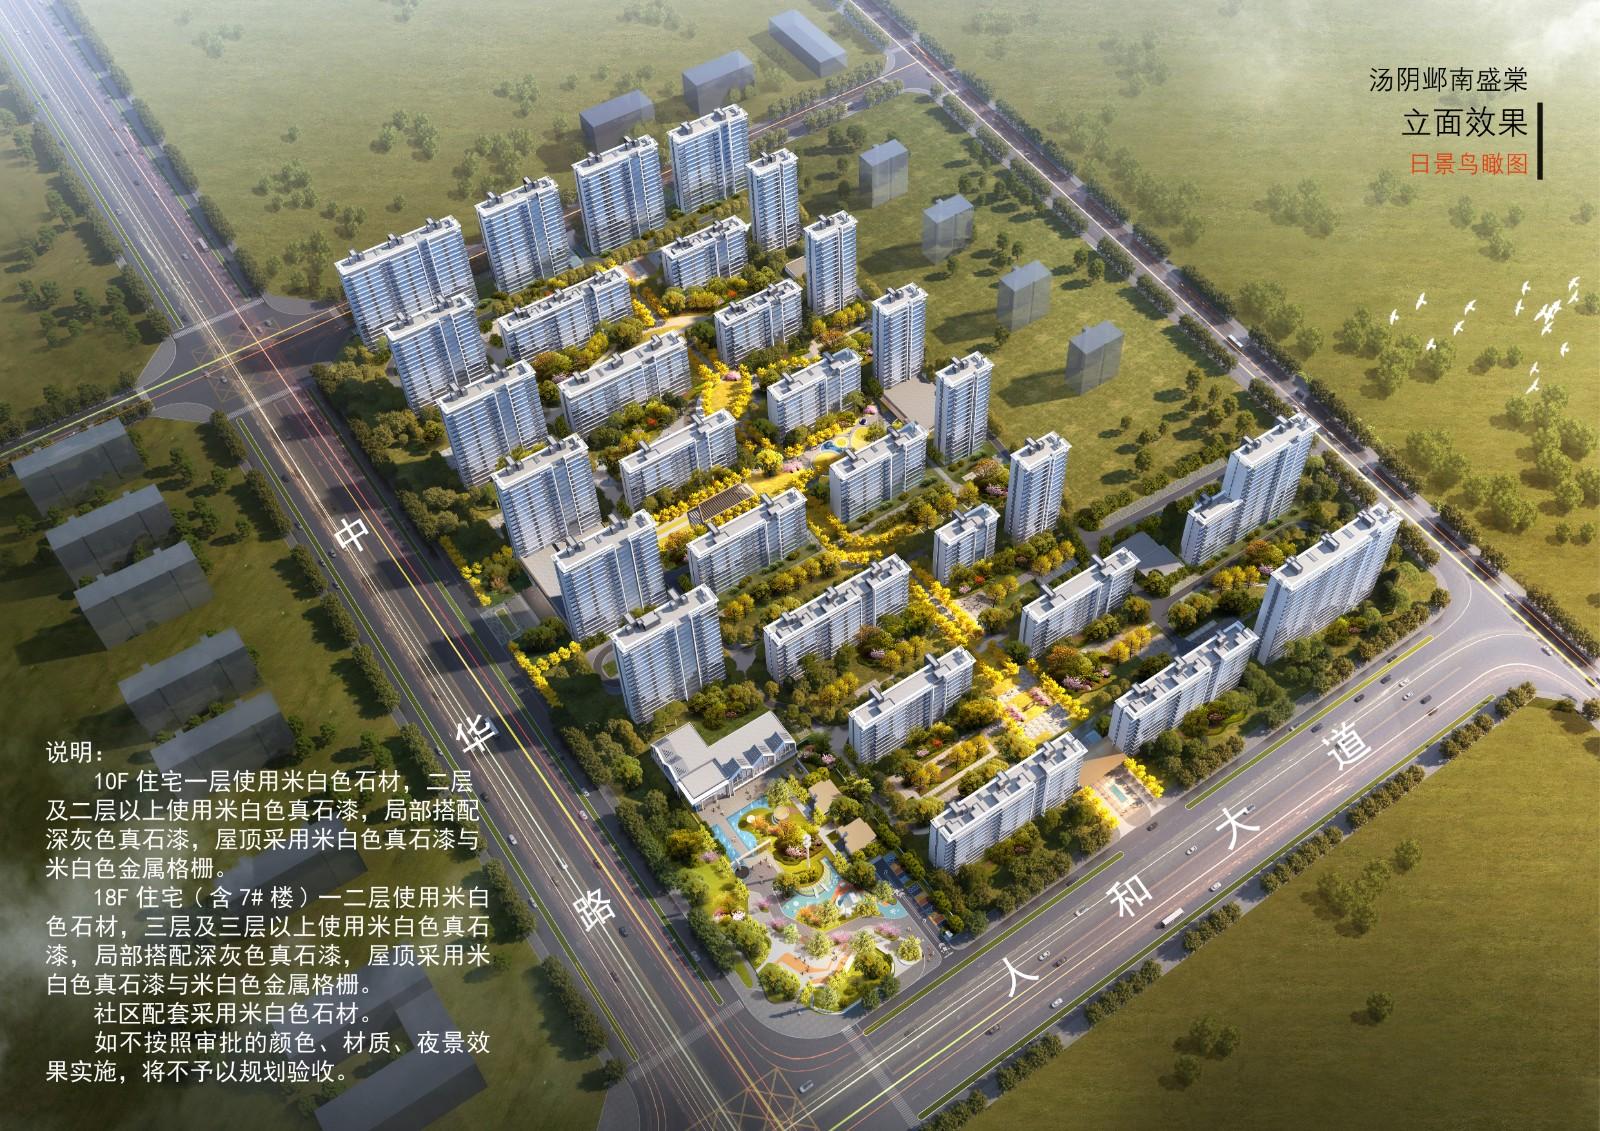 汤阴县城乡规划发展中心城区公示（2022年030号）2021年城区景观工程设计平面图、效果图